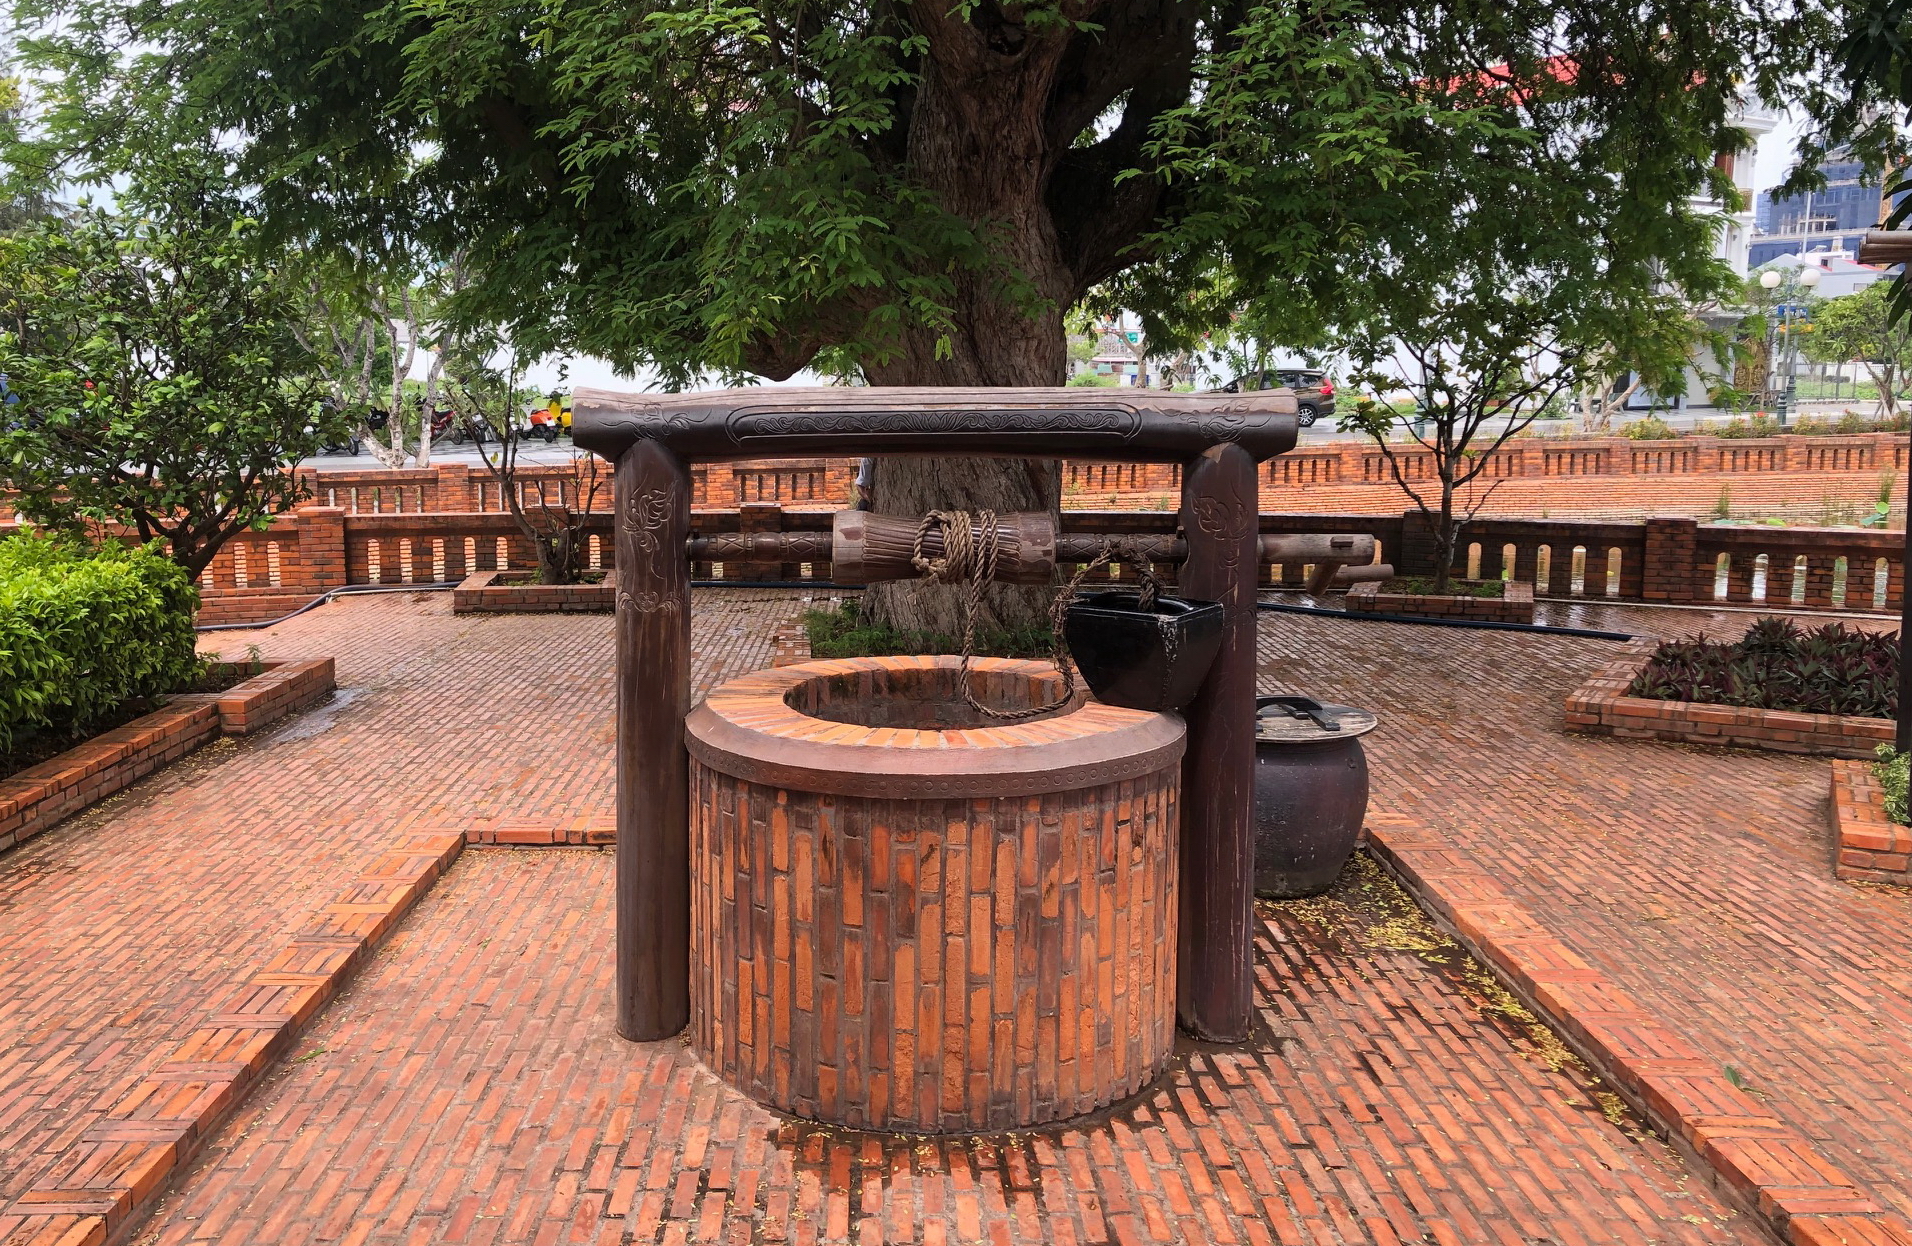 Thanh Minh Tự - Chùa cổ gần 150 tuổi giữa lòng khu đô thị biển Phan Thiết - Bình Thuận - Ảnh 4.